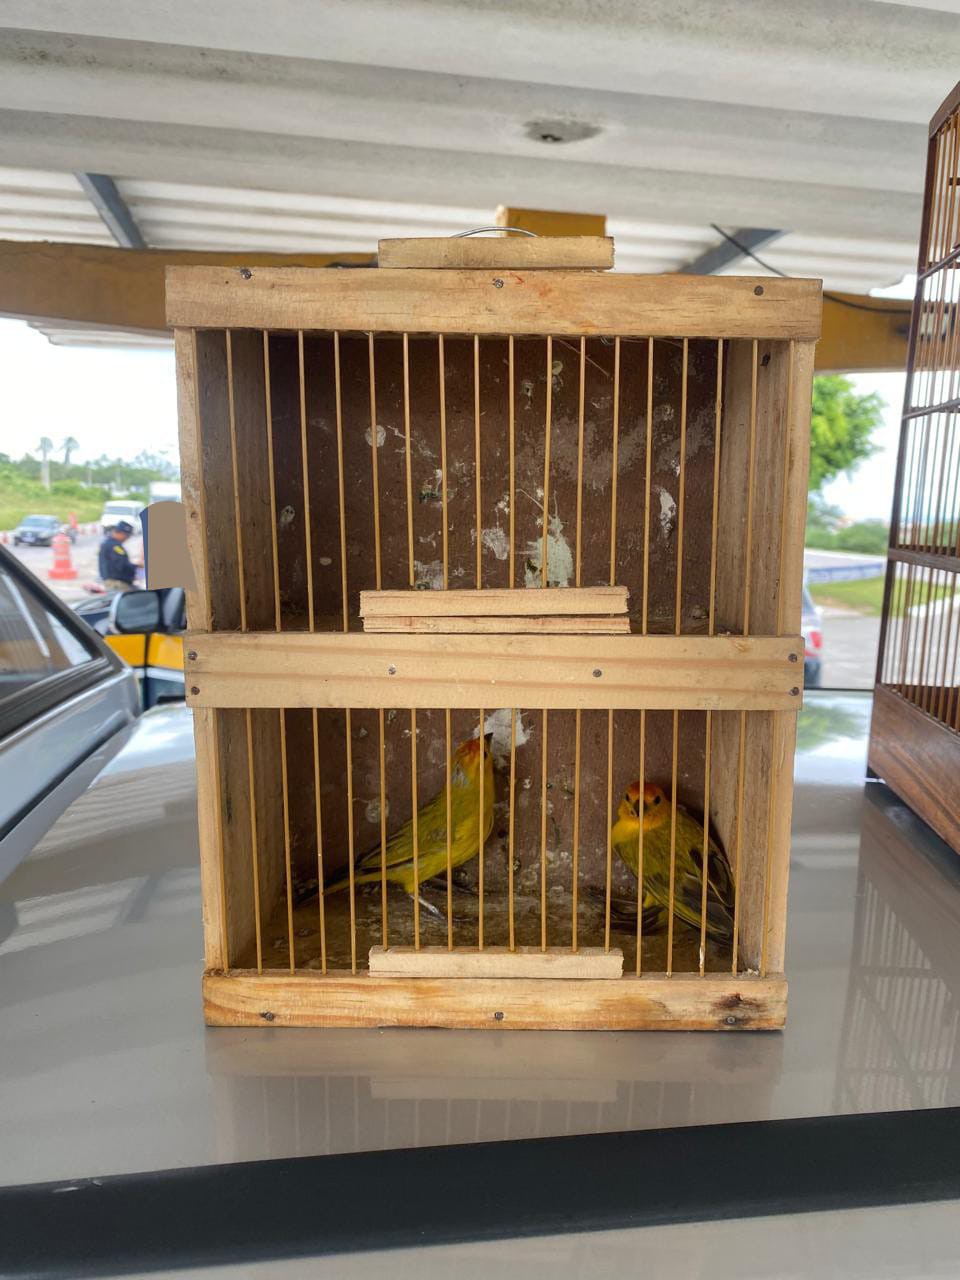 Aves foram resgatadas em carro  (Foto: PRF)